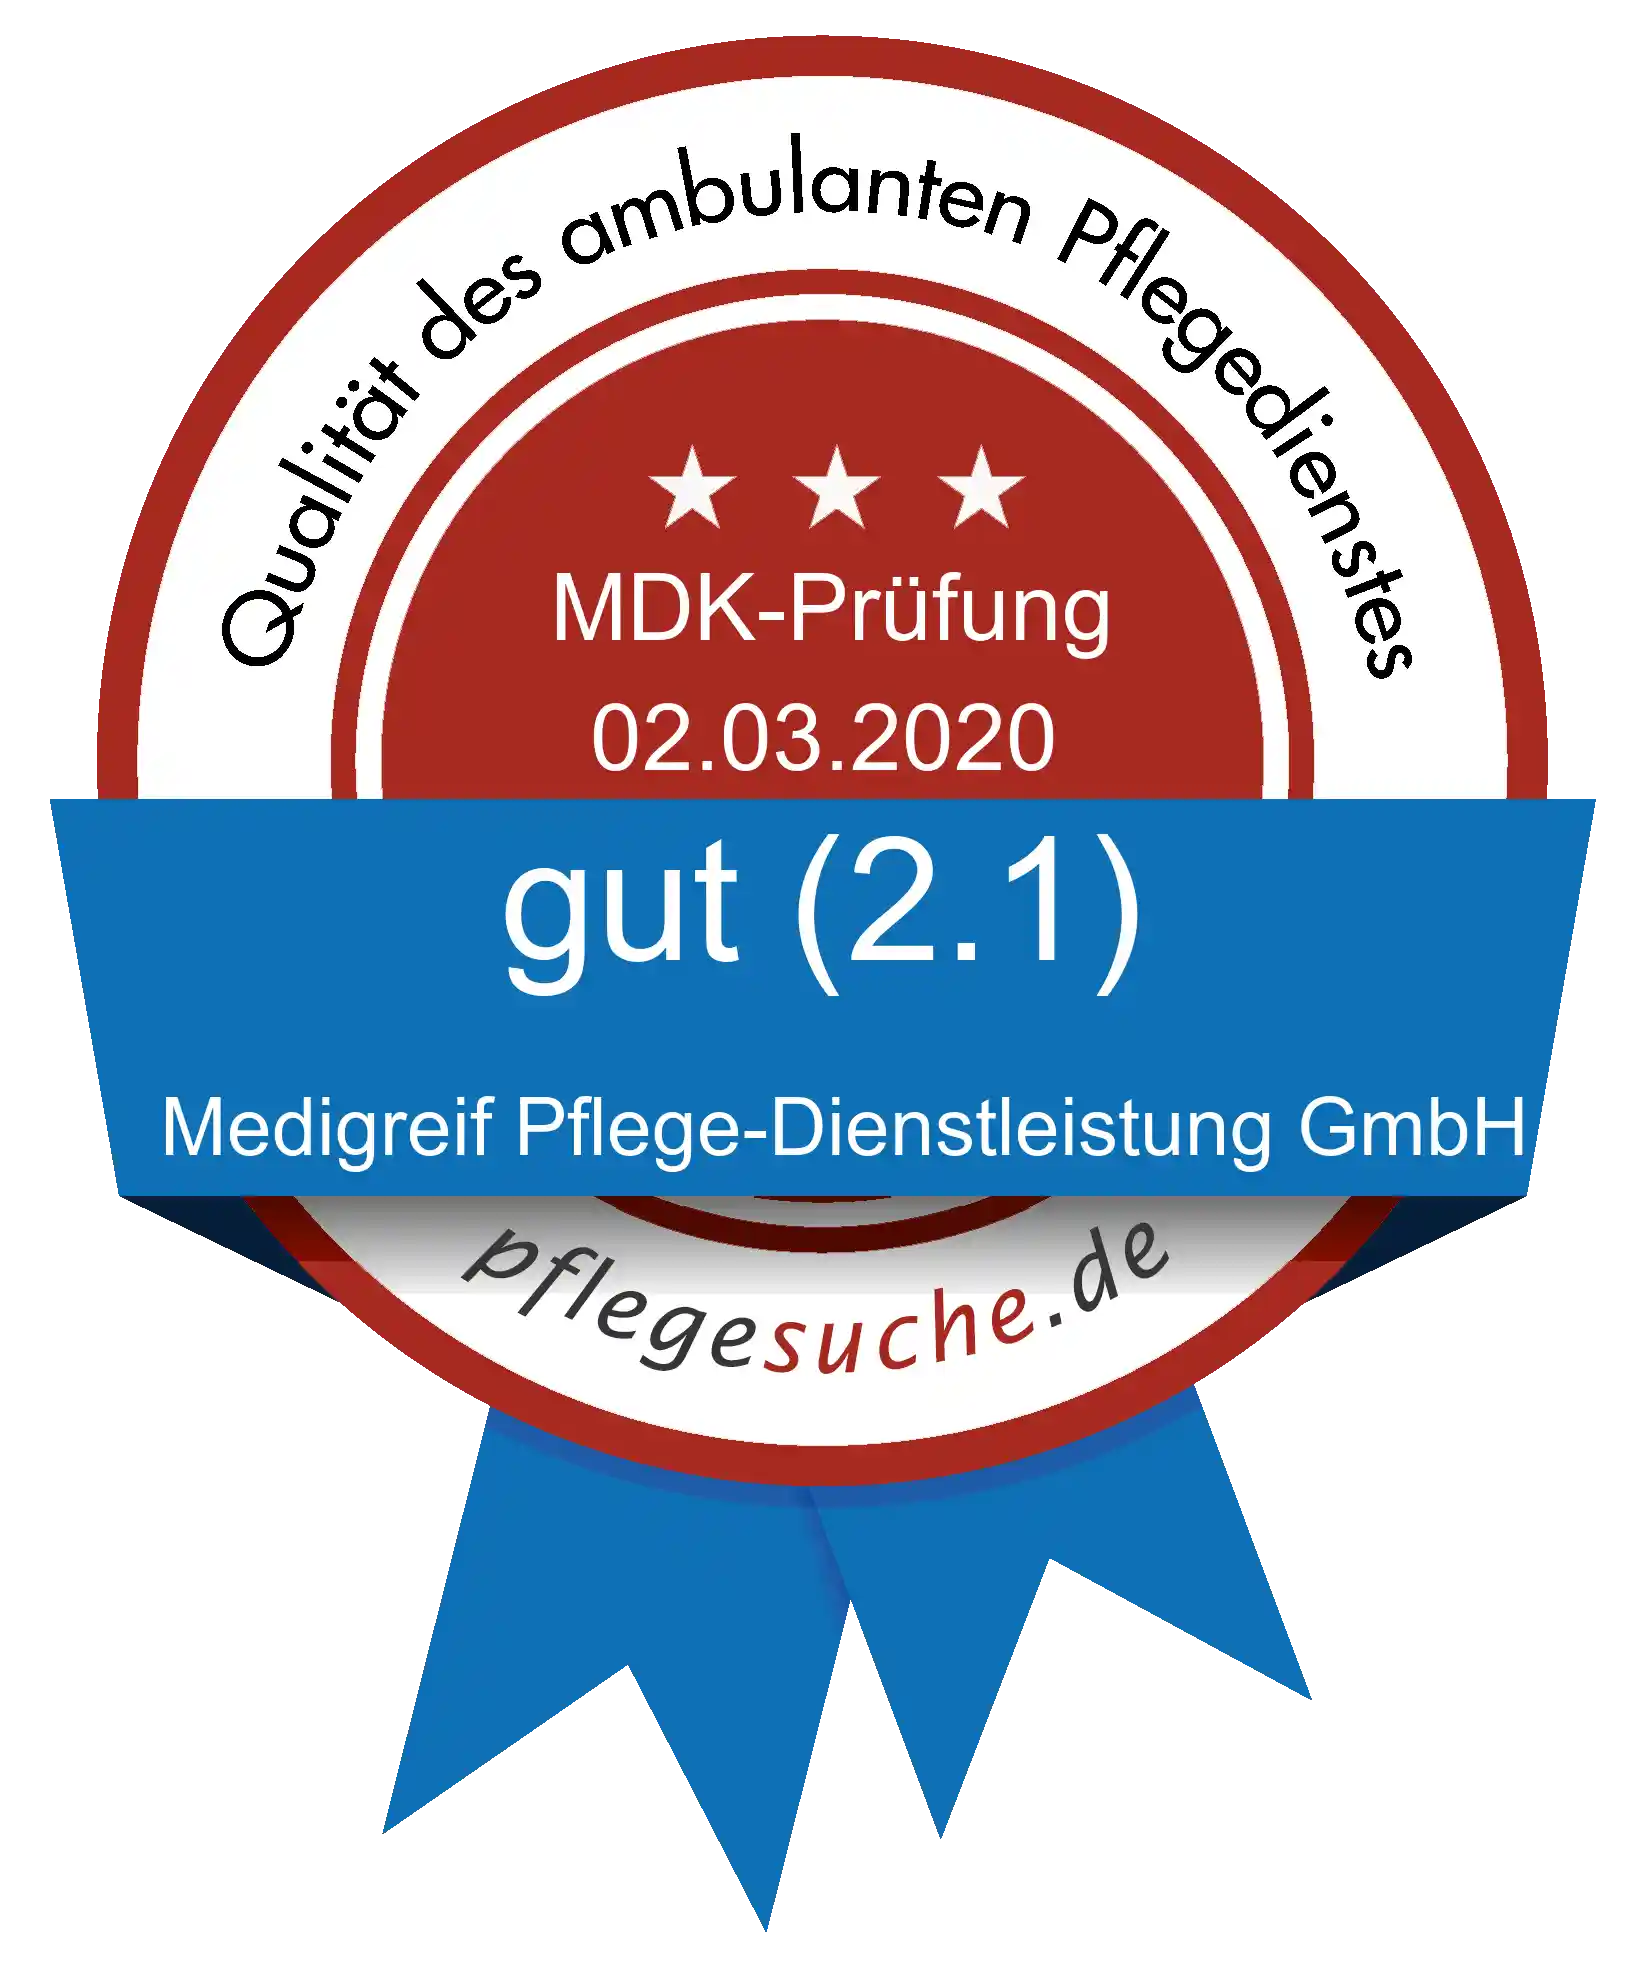 Siegel Benotung: Medigreif Pflege-Dienstleistung GmbH